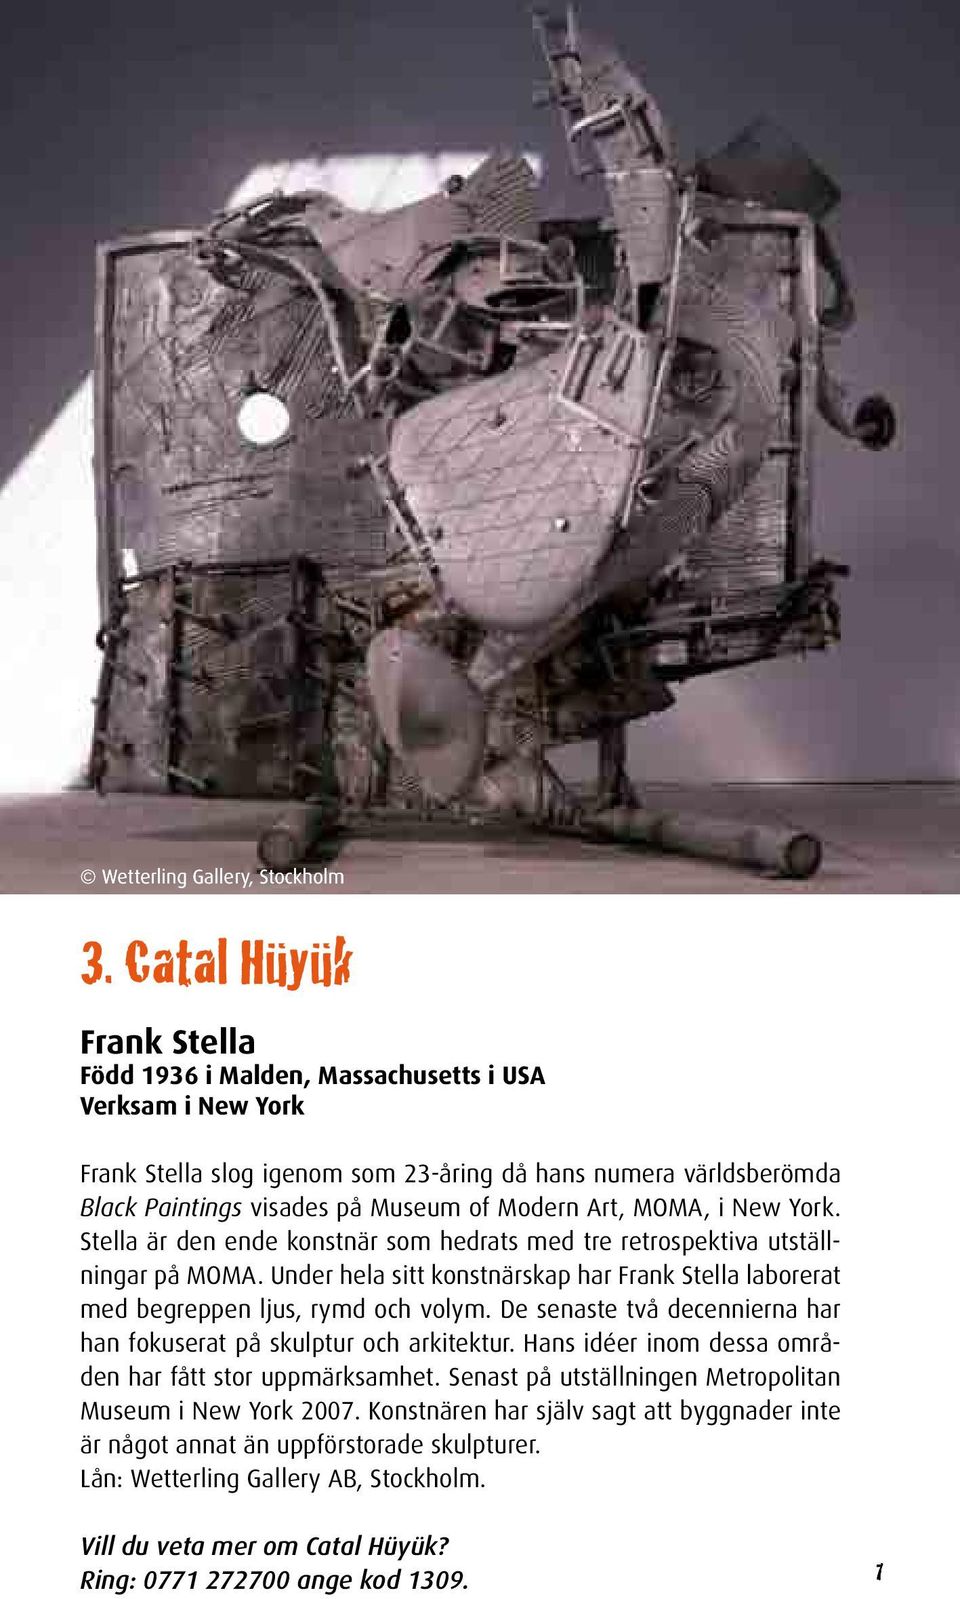 MOMA, i New York. Stella är den ende konstnär som hedrats med tre retrospektiva utställningar på MOMA. Under hela sitt konstnärskap har Frank Stella laborerat med begreppen ljus, rymd och volym.